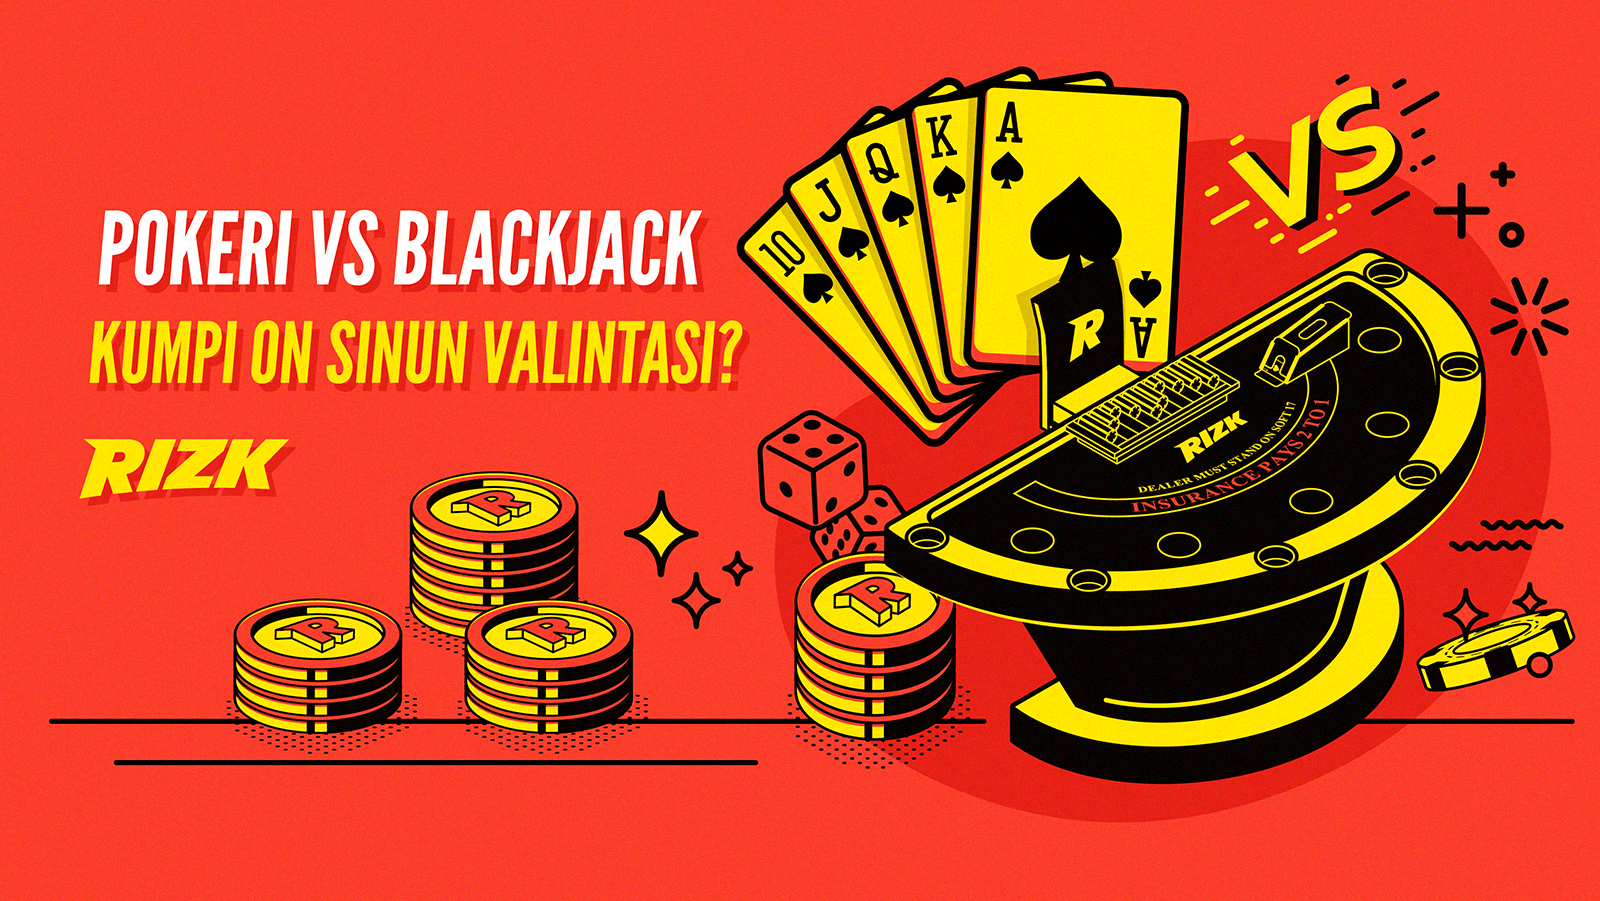 Pokeri vs blackjack?